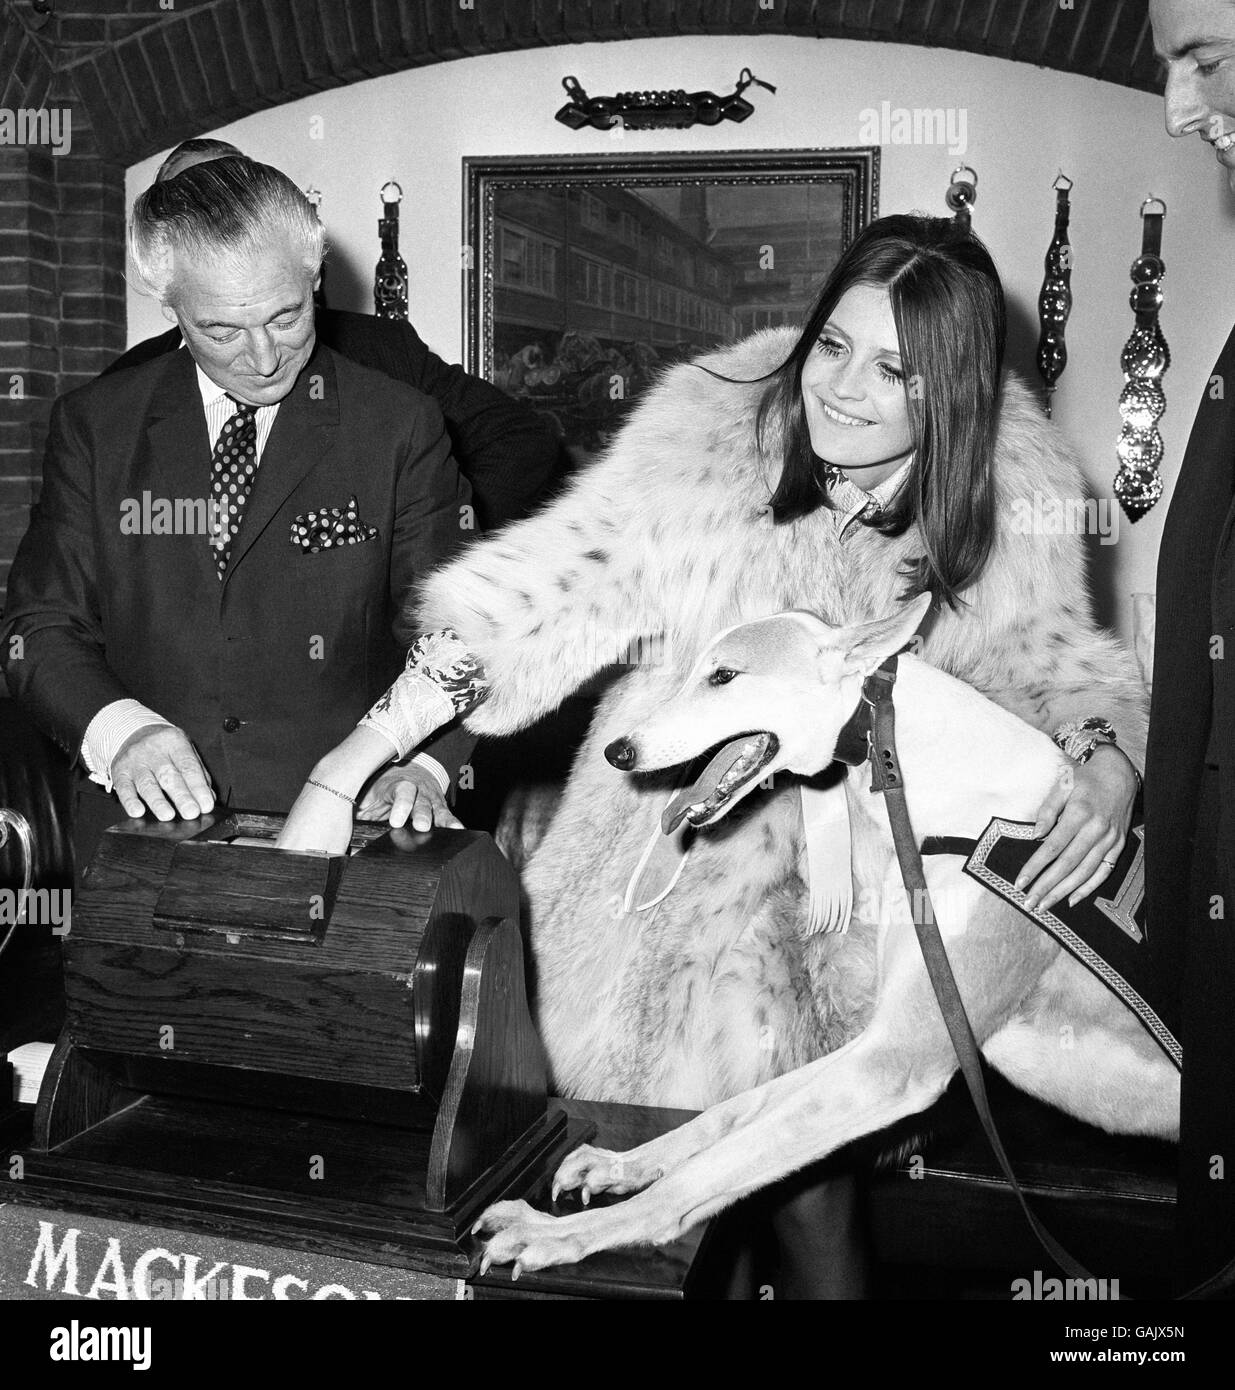 Popstar Sandie Shaw verloste die erste Runde der 7000 Pfund schweren Mackeson Greyhound Championship in Whitbread's City Cellars, mit Major Percy Brown, Director of Racing der Greyhound Racing Association, und Camira Flash, dem Greyhound-Derby-Gewinner des Jahres 1968, dem Duke of Edinburgh Greyhound. Stockfoto